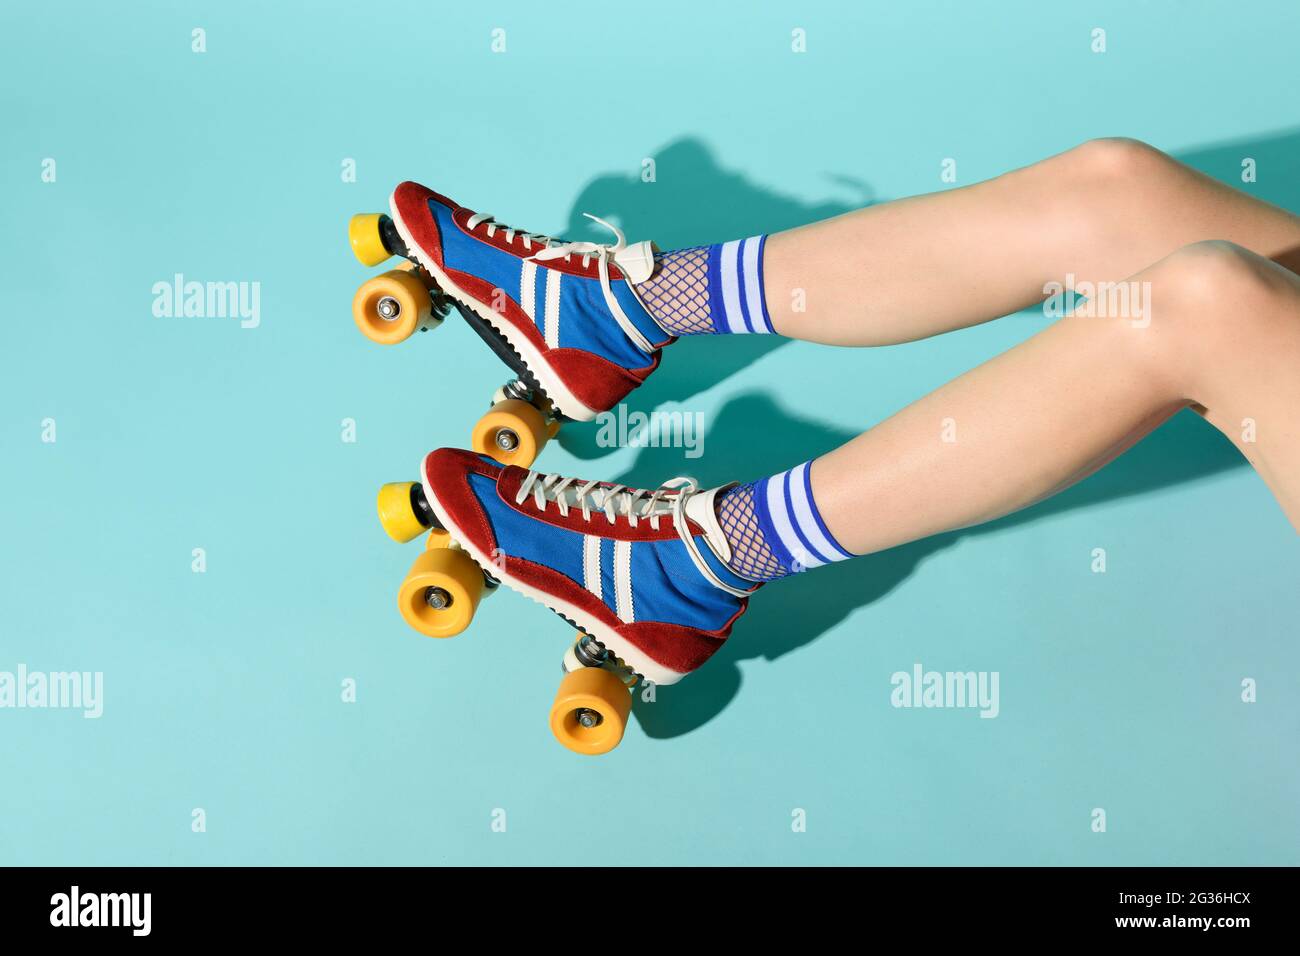 Giovane donna con gambe sottili skinny che indossa colorati pattini a rotelle con ruote gialle e una vista delle sue gambe che si estende da destra su uno sfondo blu Foto Stock